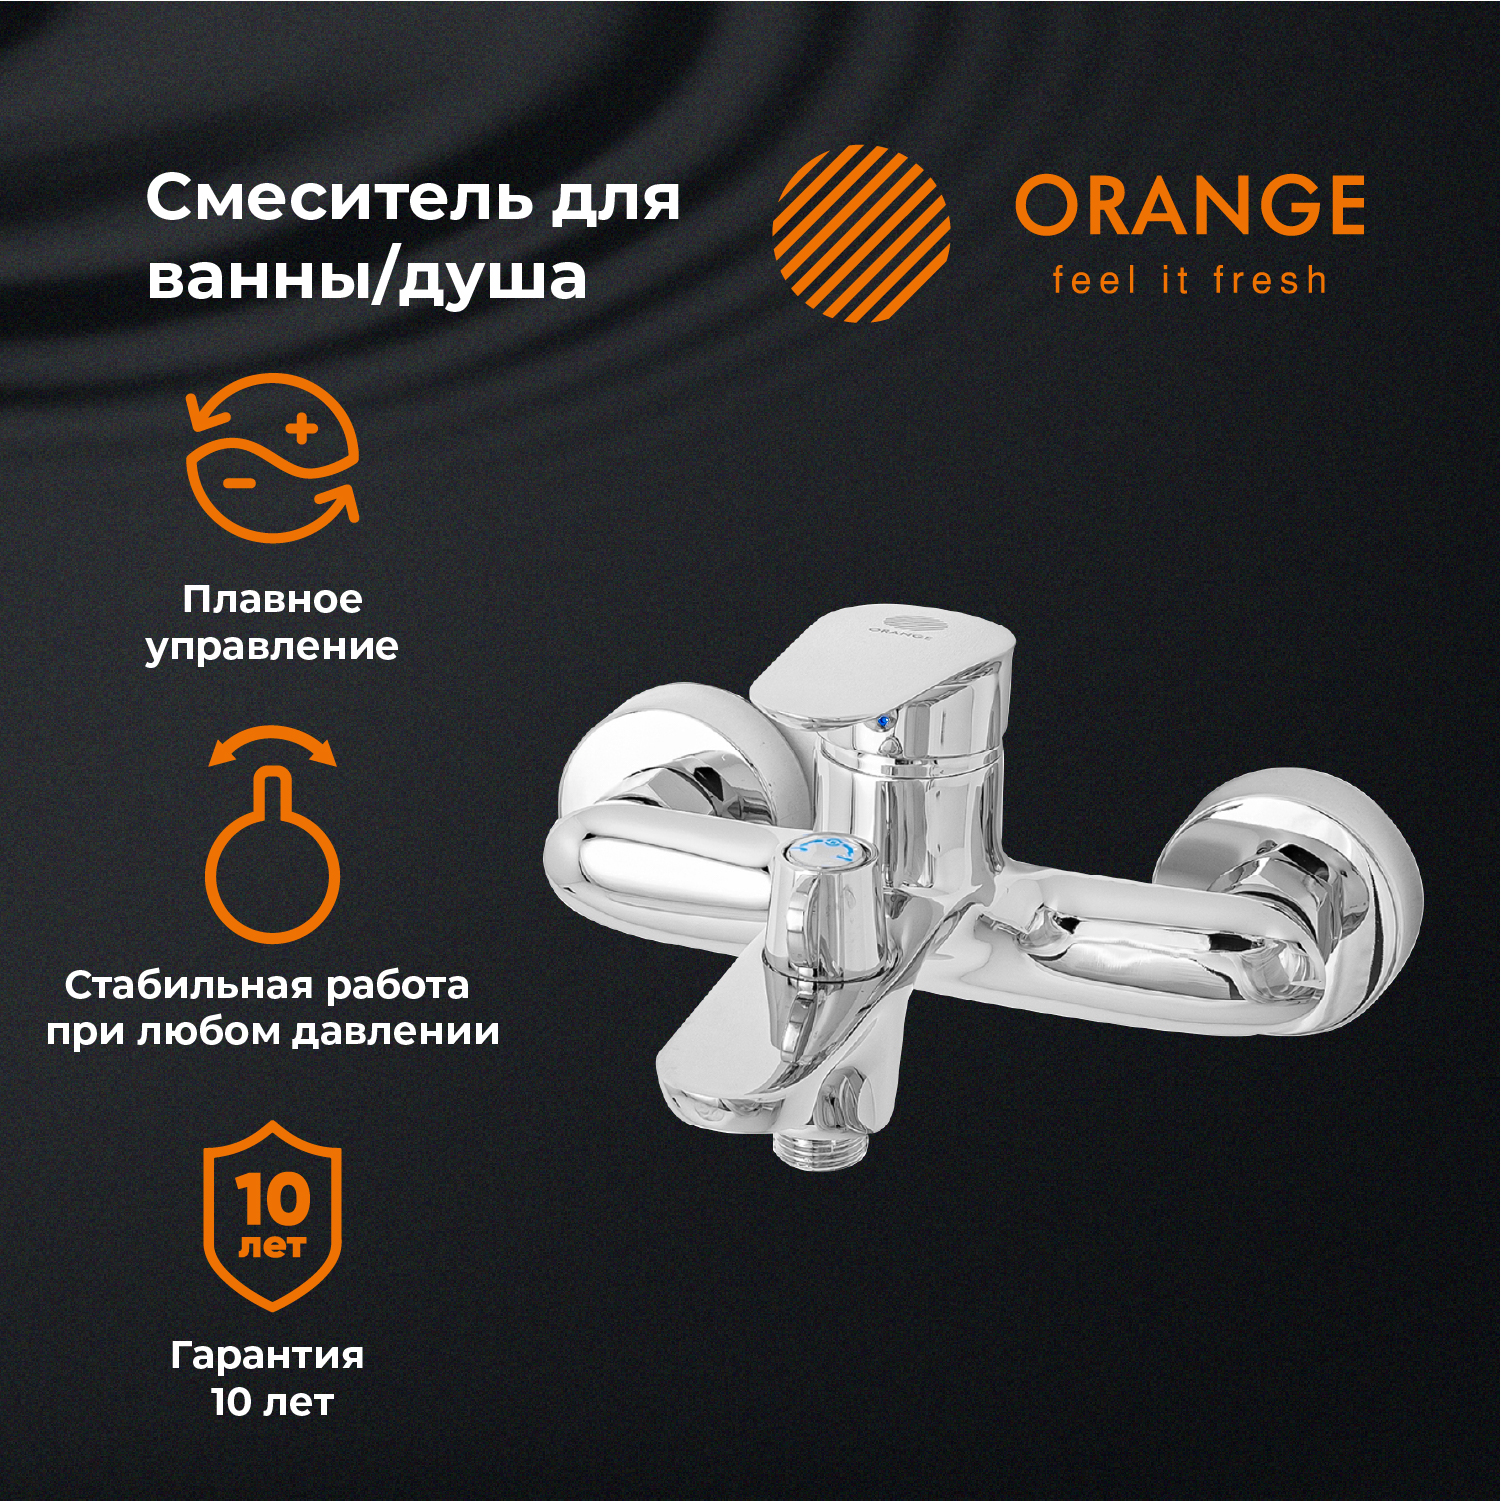 Смеситель для ванны и душа Orange MODI M25-100cr цвет хром